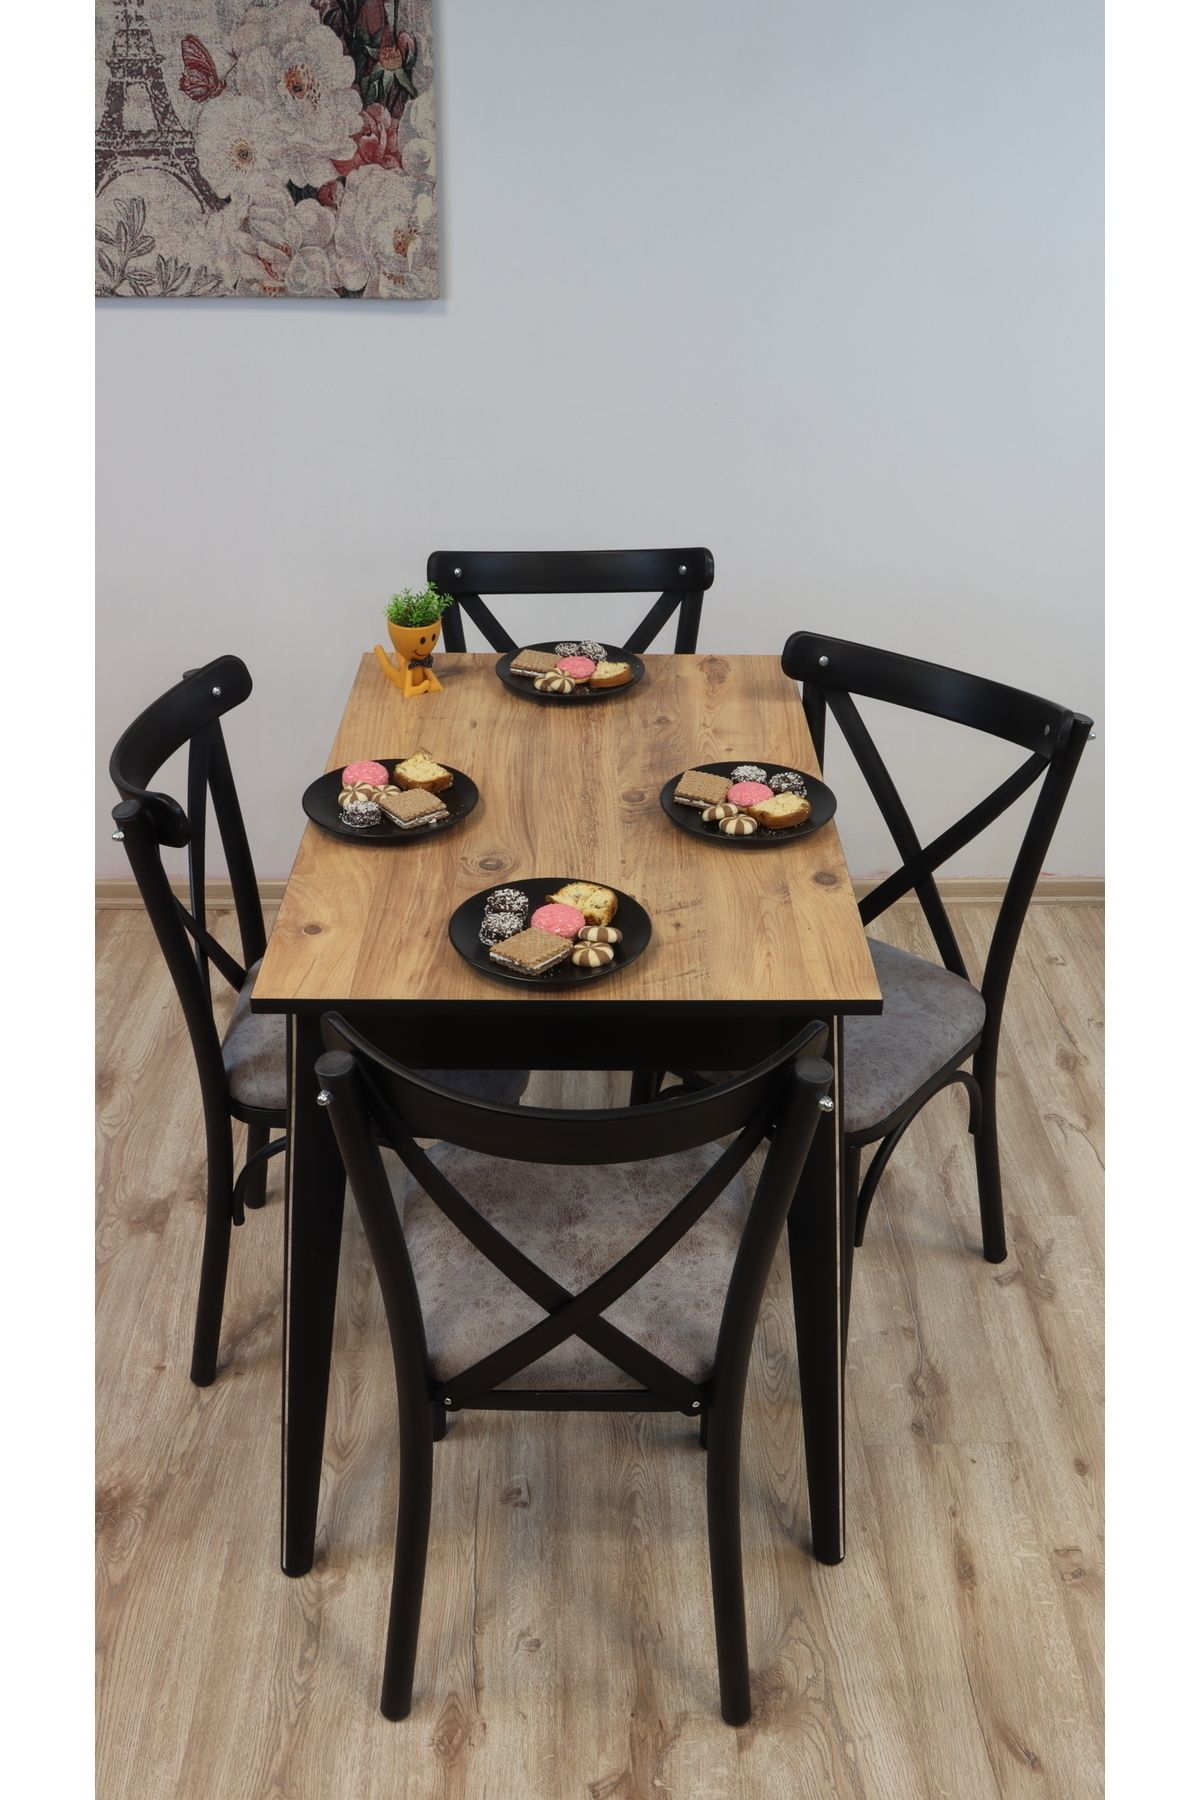 Dimassi PİCASSO Siyah Krom Mermer 4 Kişilik Yemek Masası Mutfak Masası Salon Masası Koyu Bej SANDALYE